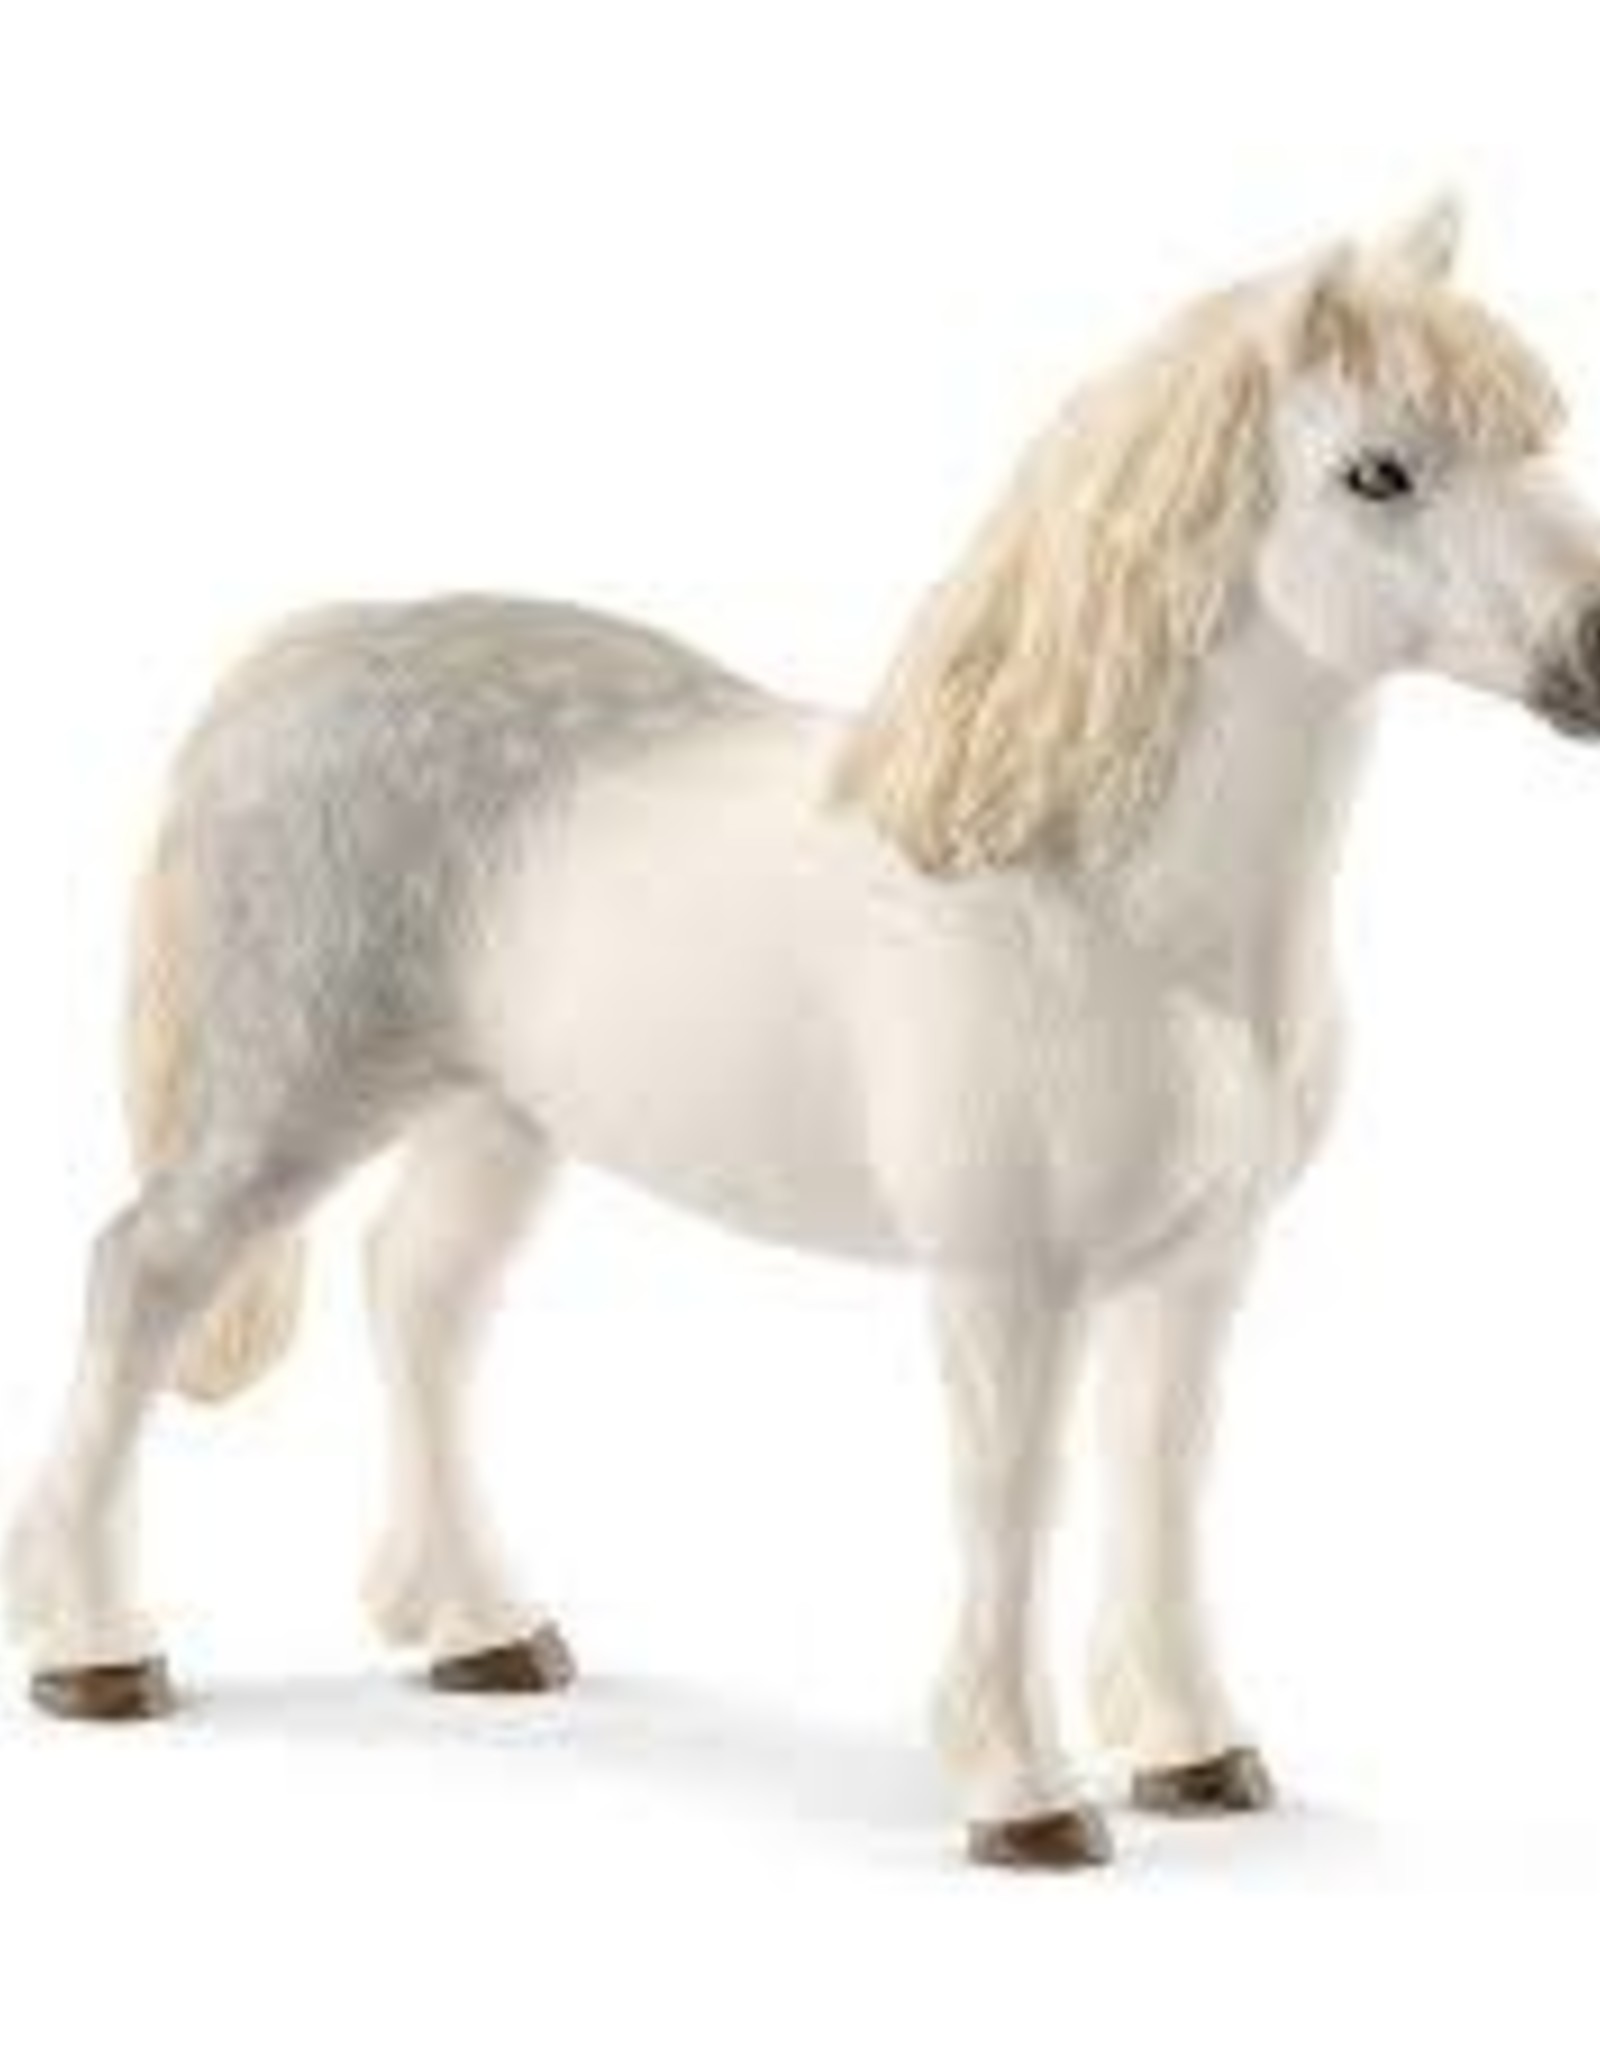 Schleich Welsh pony stallion